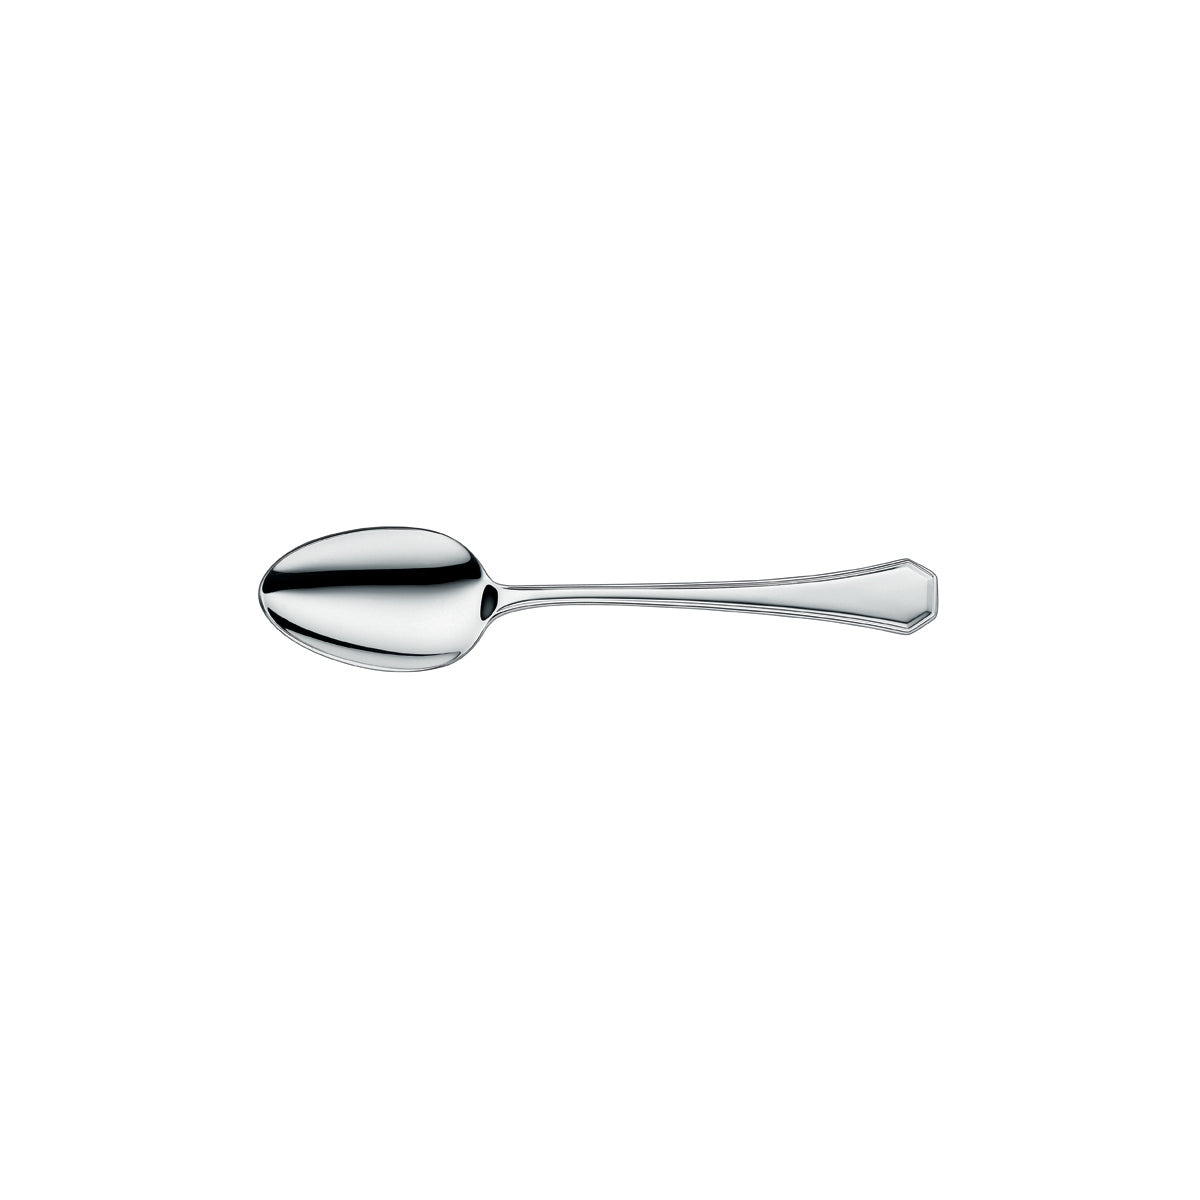 12.6201.6040 WMF Mondial Table Spoon Stainless Steel Tomkin Australia Hospitality Supplies